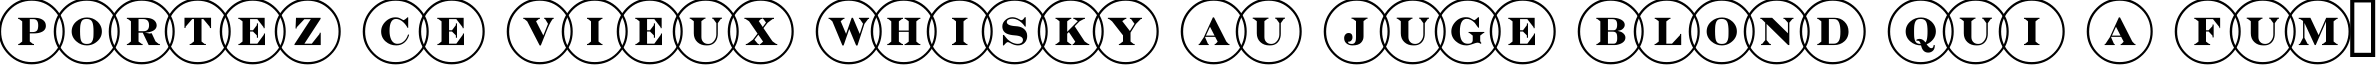 Пример написания шрифтом a_DiscoSerifOvl текста на французском